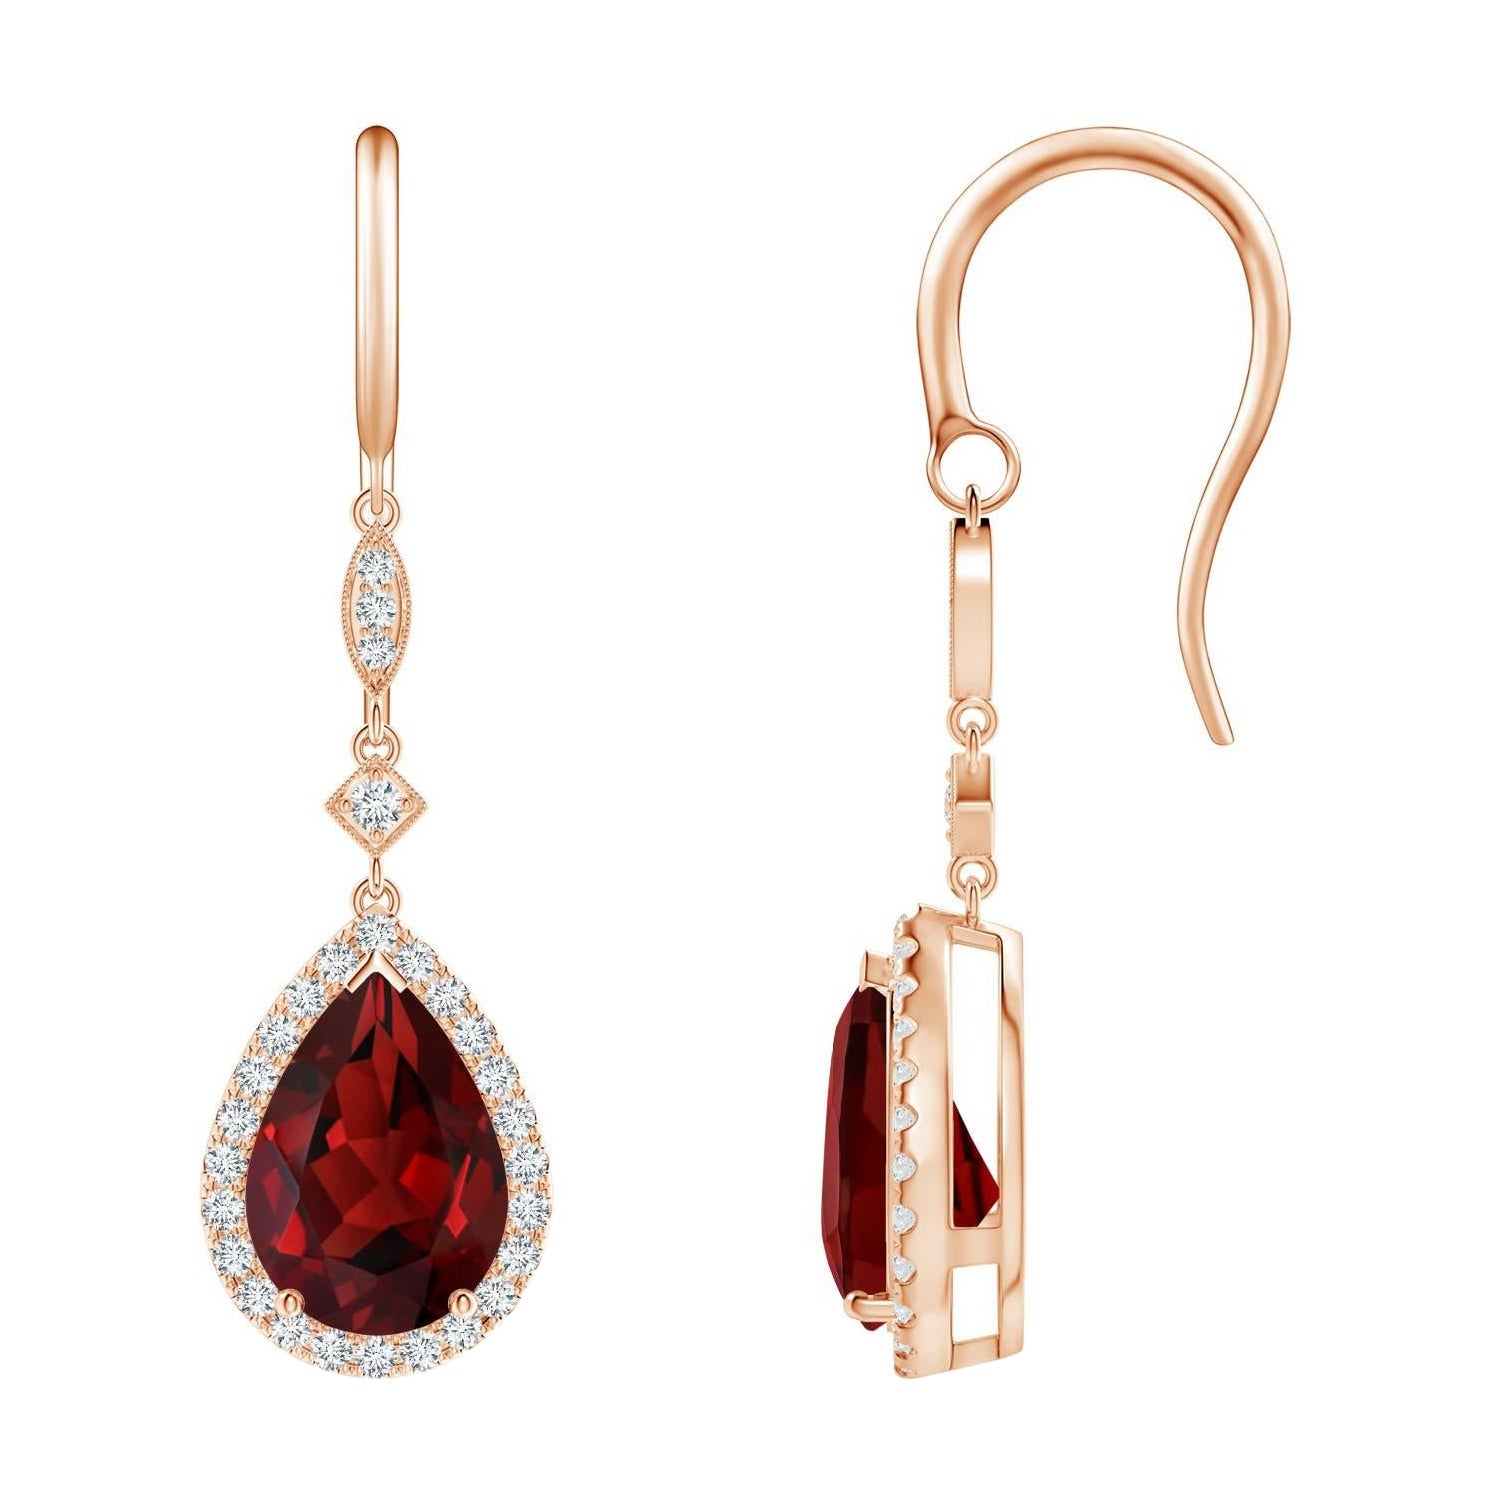 Boucles d'oreilles pendantes en or rose 14 carats avec grenat naturel en forme de poire de 4,2 carats et diamants